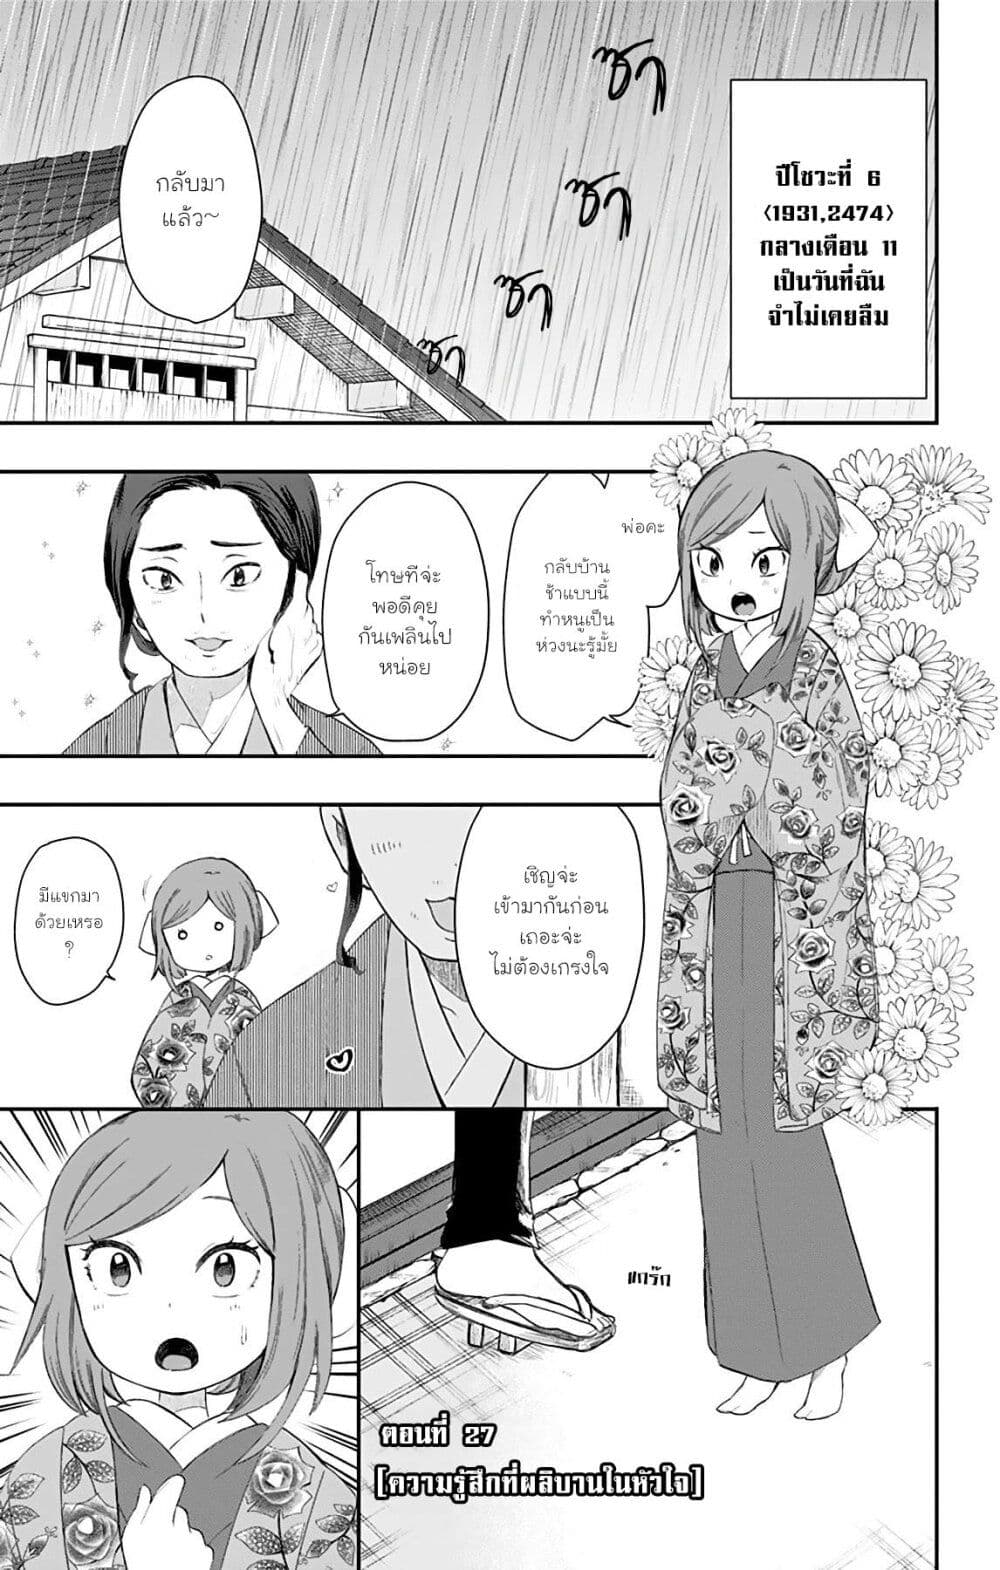 Shouwa Otome Otogibanashi เรื่องเล่าของสาวน้อย ยุคโชวะ ตอนที่ 27 (1)